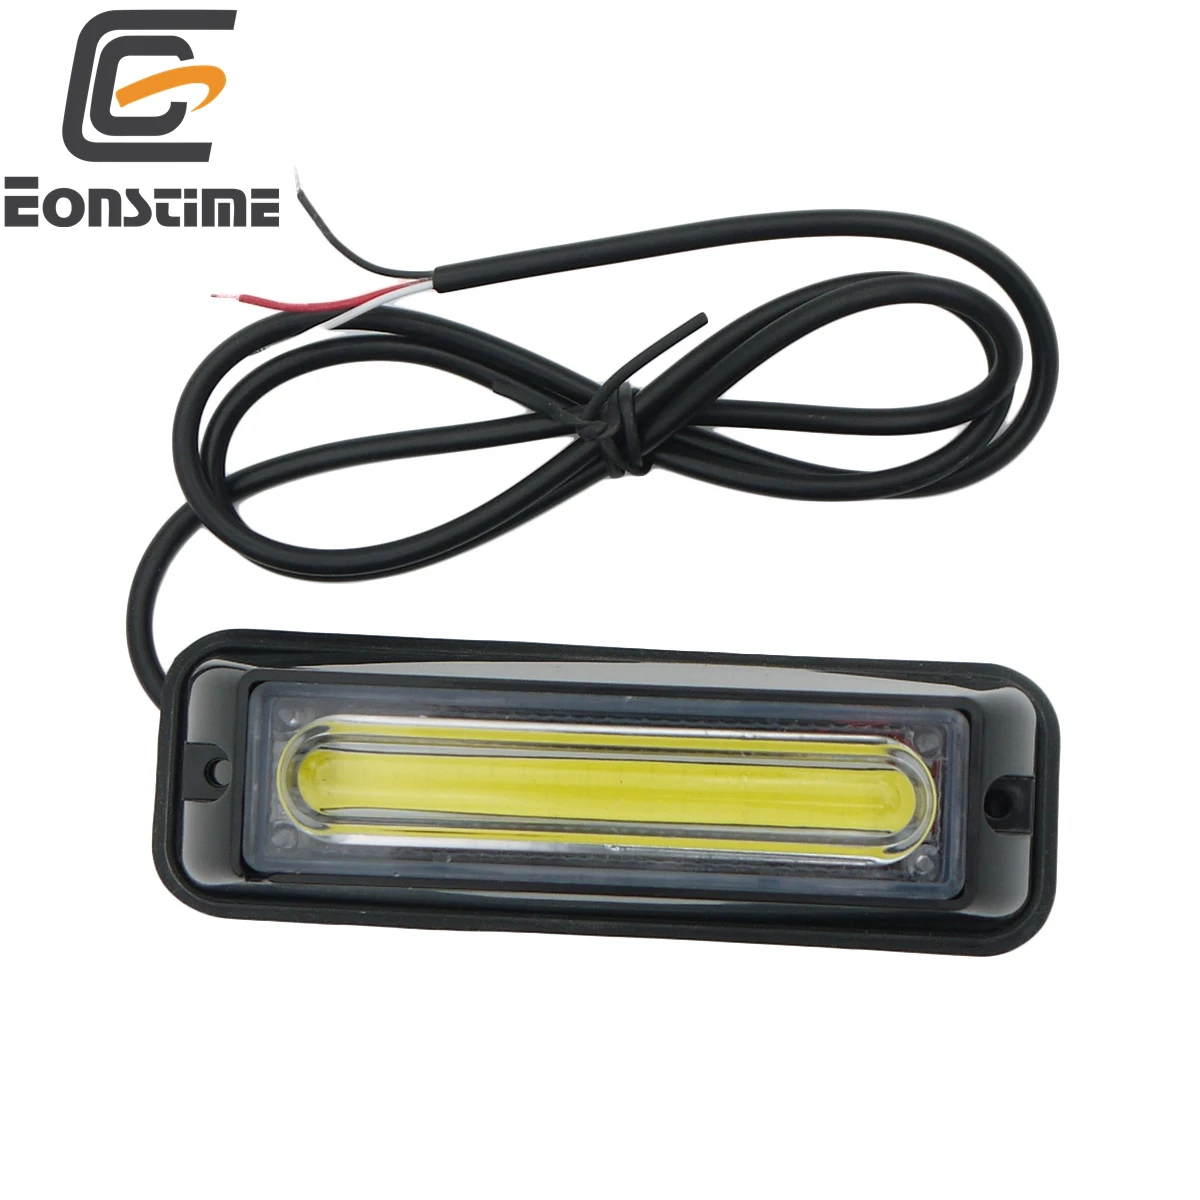 Eonstime 1pcs 12V-24V COB LED Traffic Advisor Emergency Flash Strobe Light Bar Warning Light Red Blue Amber White